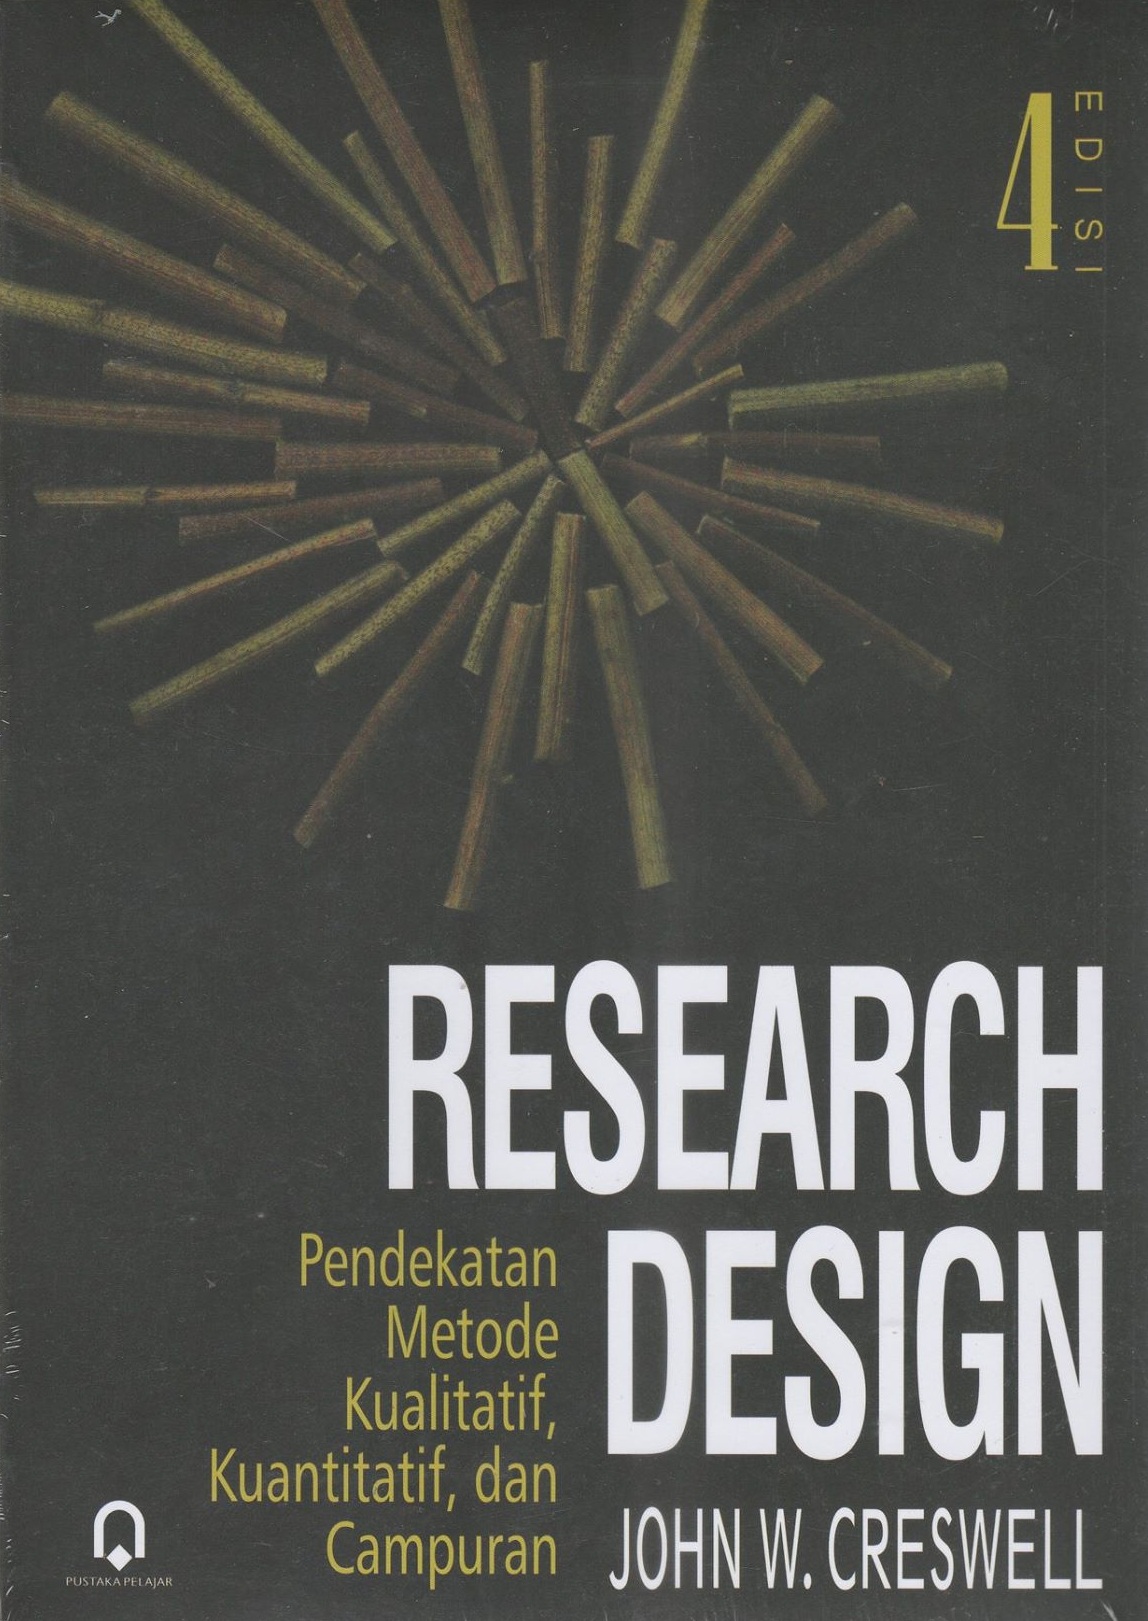 [Research design,qualitative, quantitativ, and mixed methods Approaches. Bahasa Indonesi]
Research design: pendekatan metode kualitatif, kuantatif dan campuran